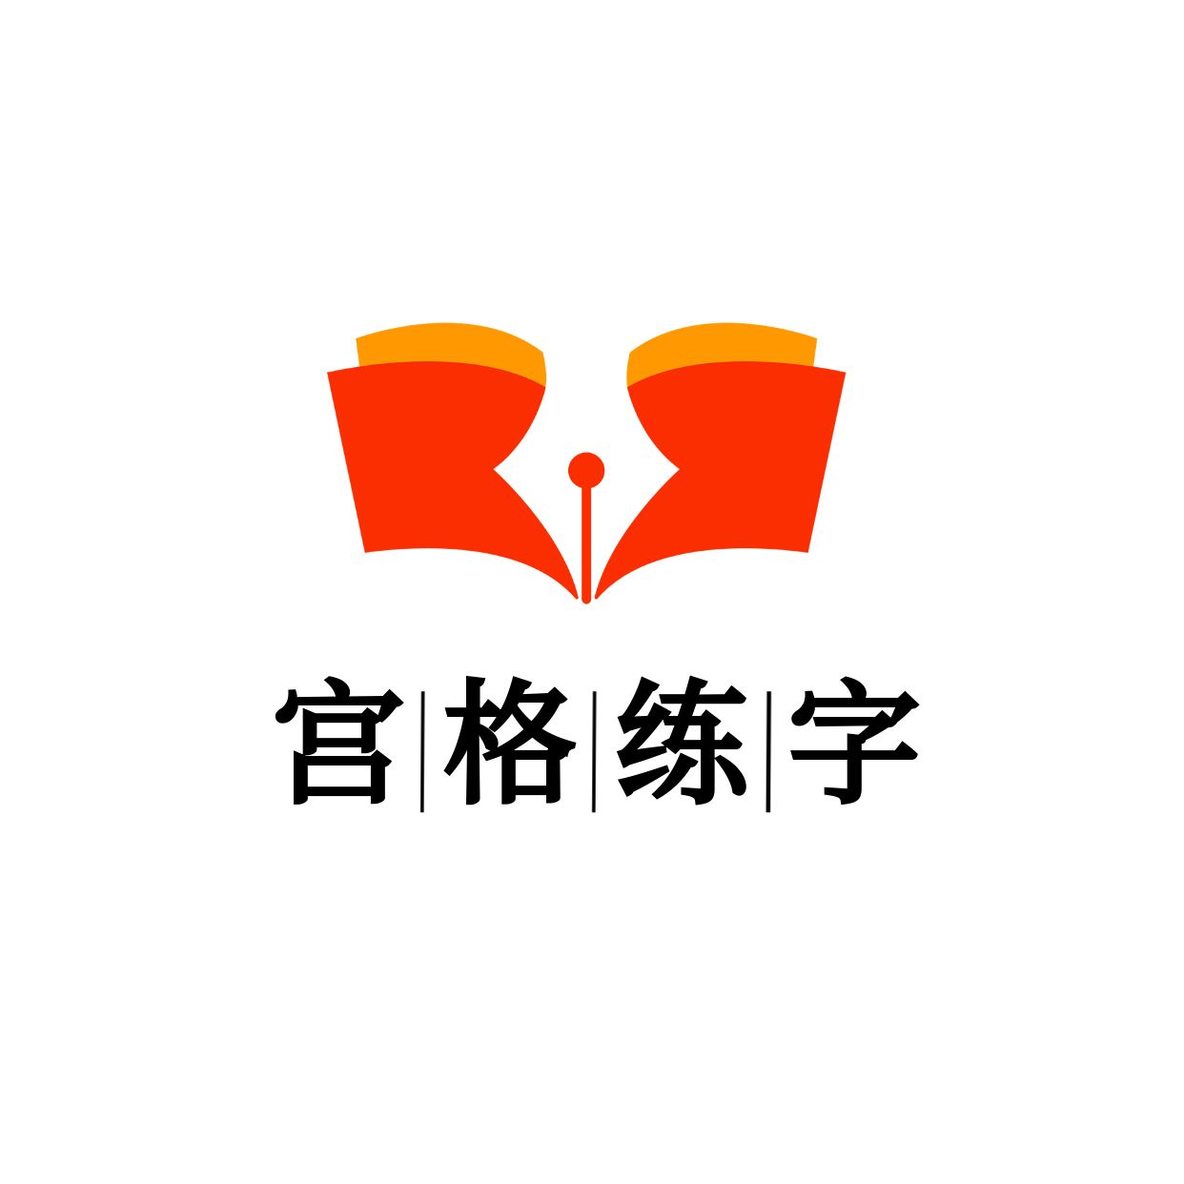 教育书本钢笔logo